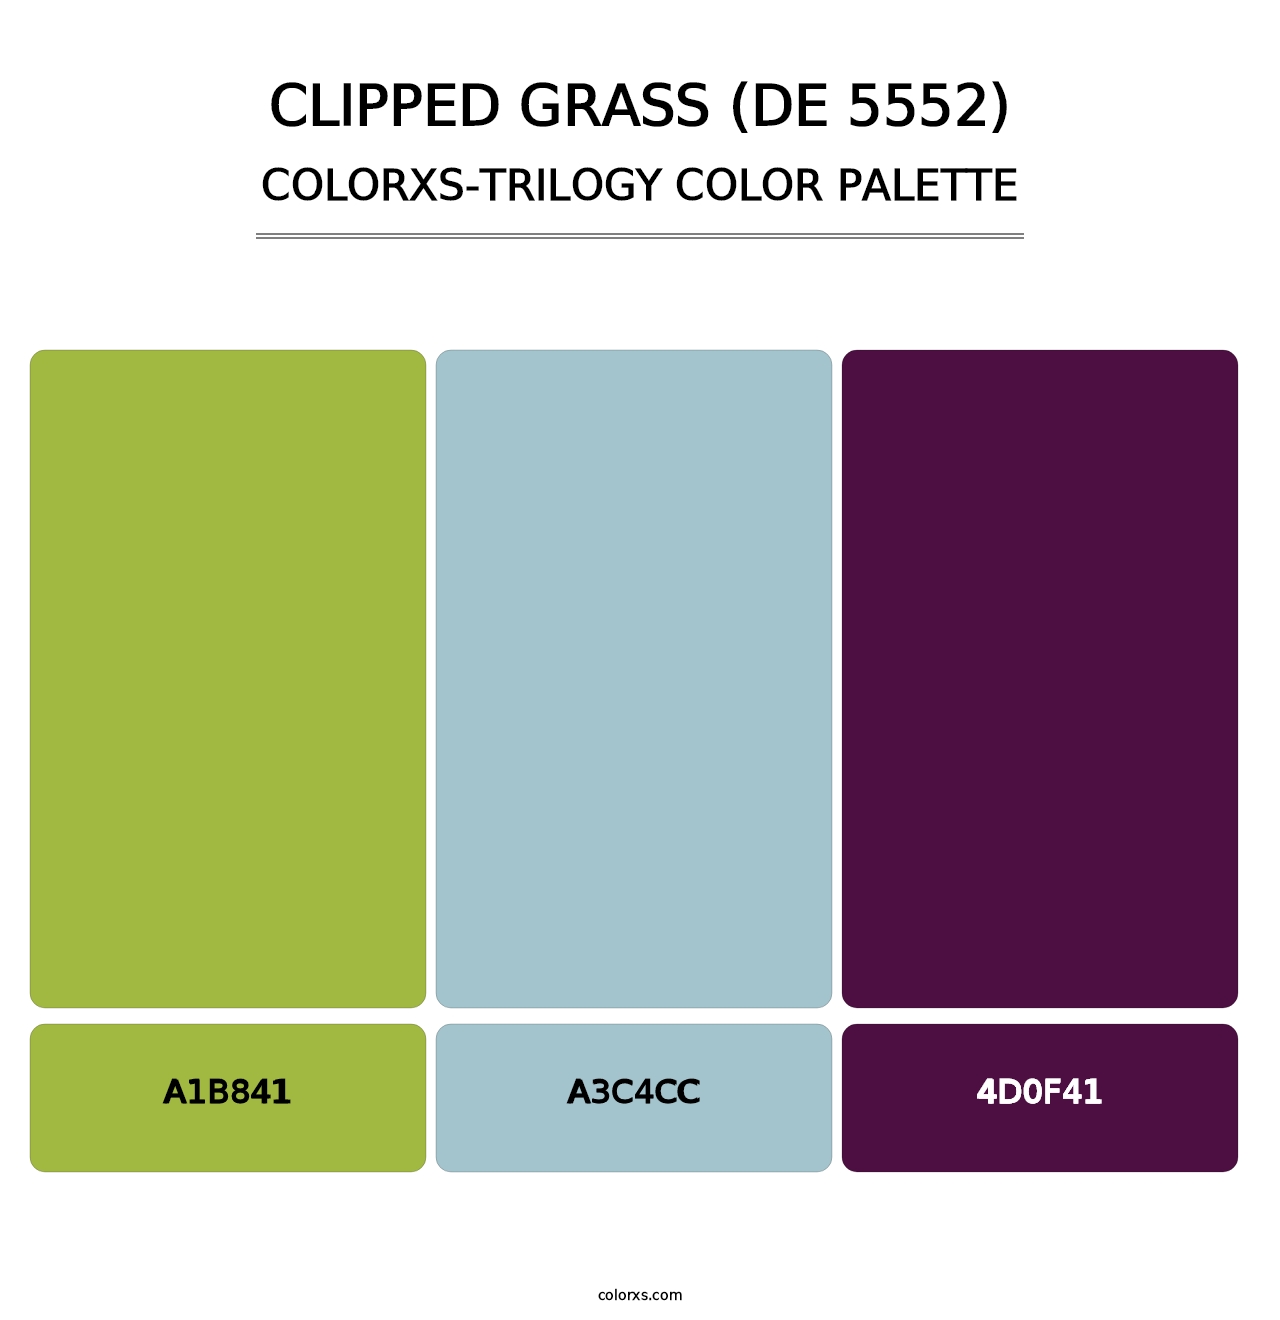 Clipped Grass (DE 5552) - Colorxs Trilogy Palette